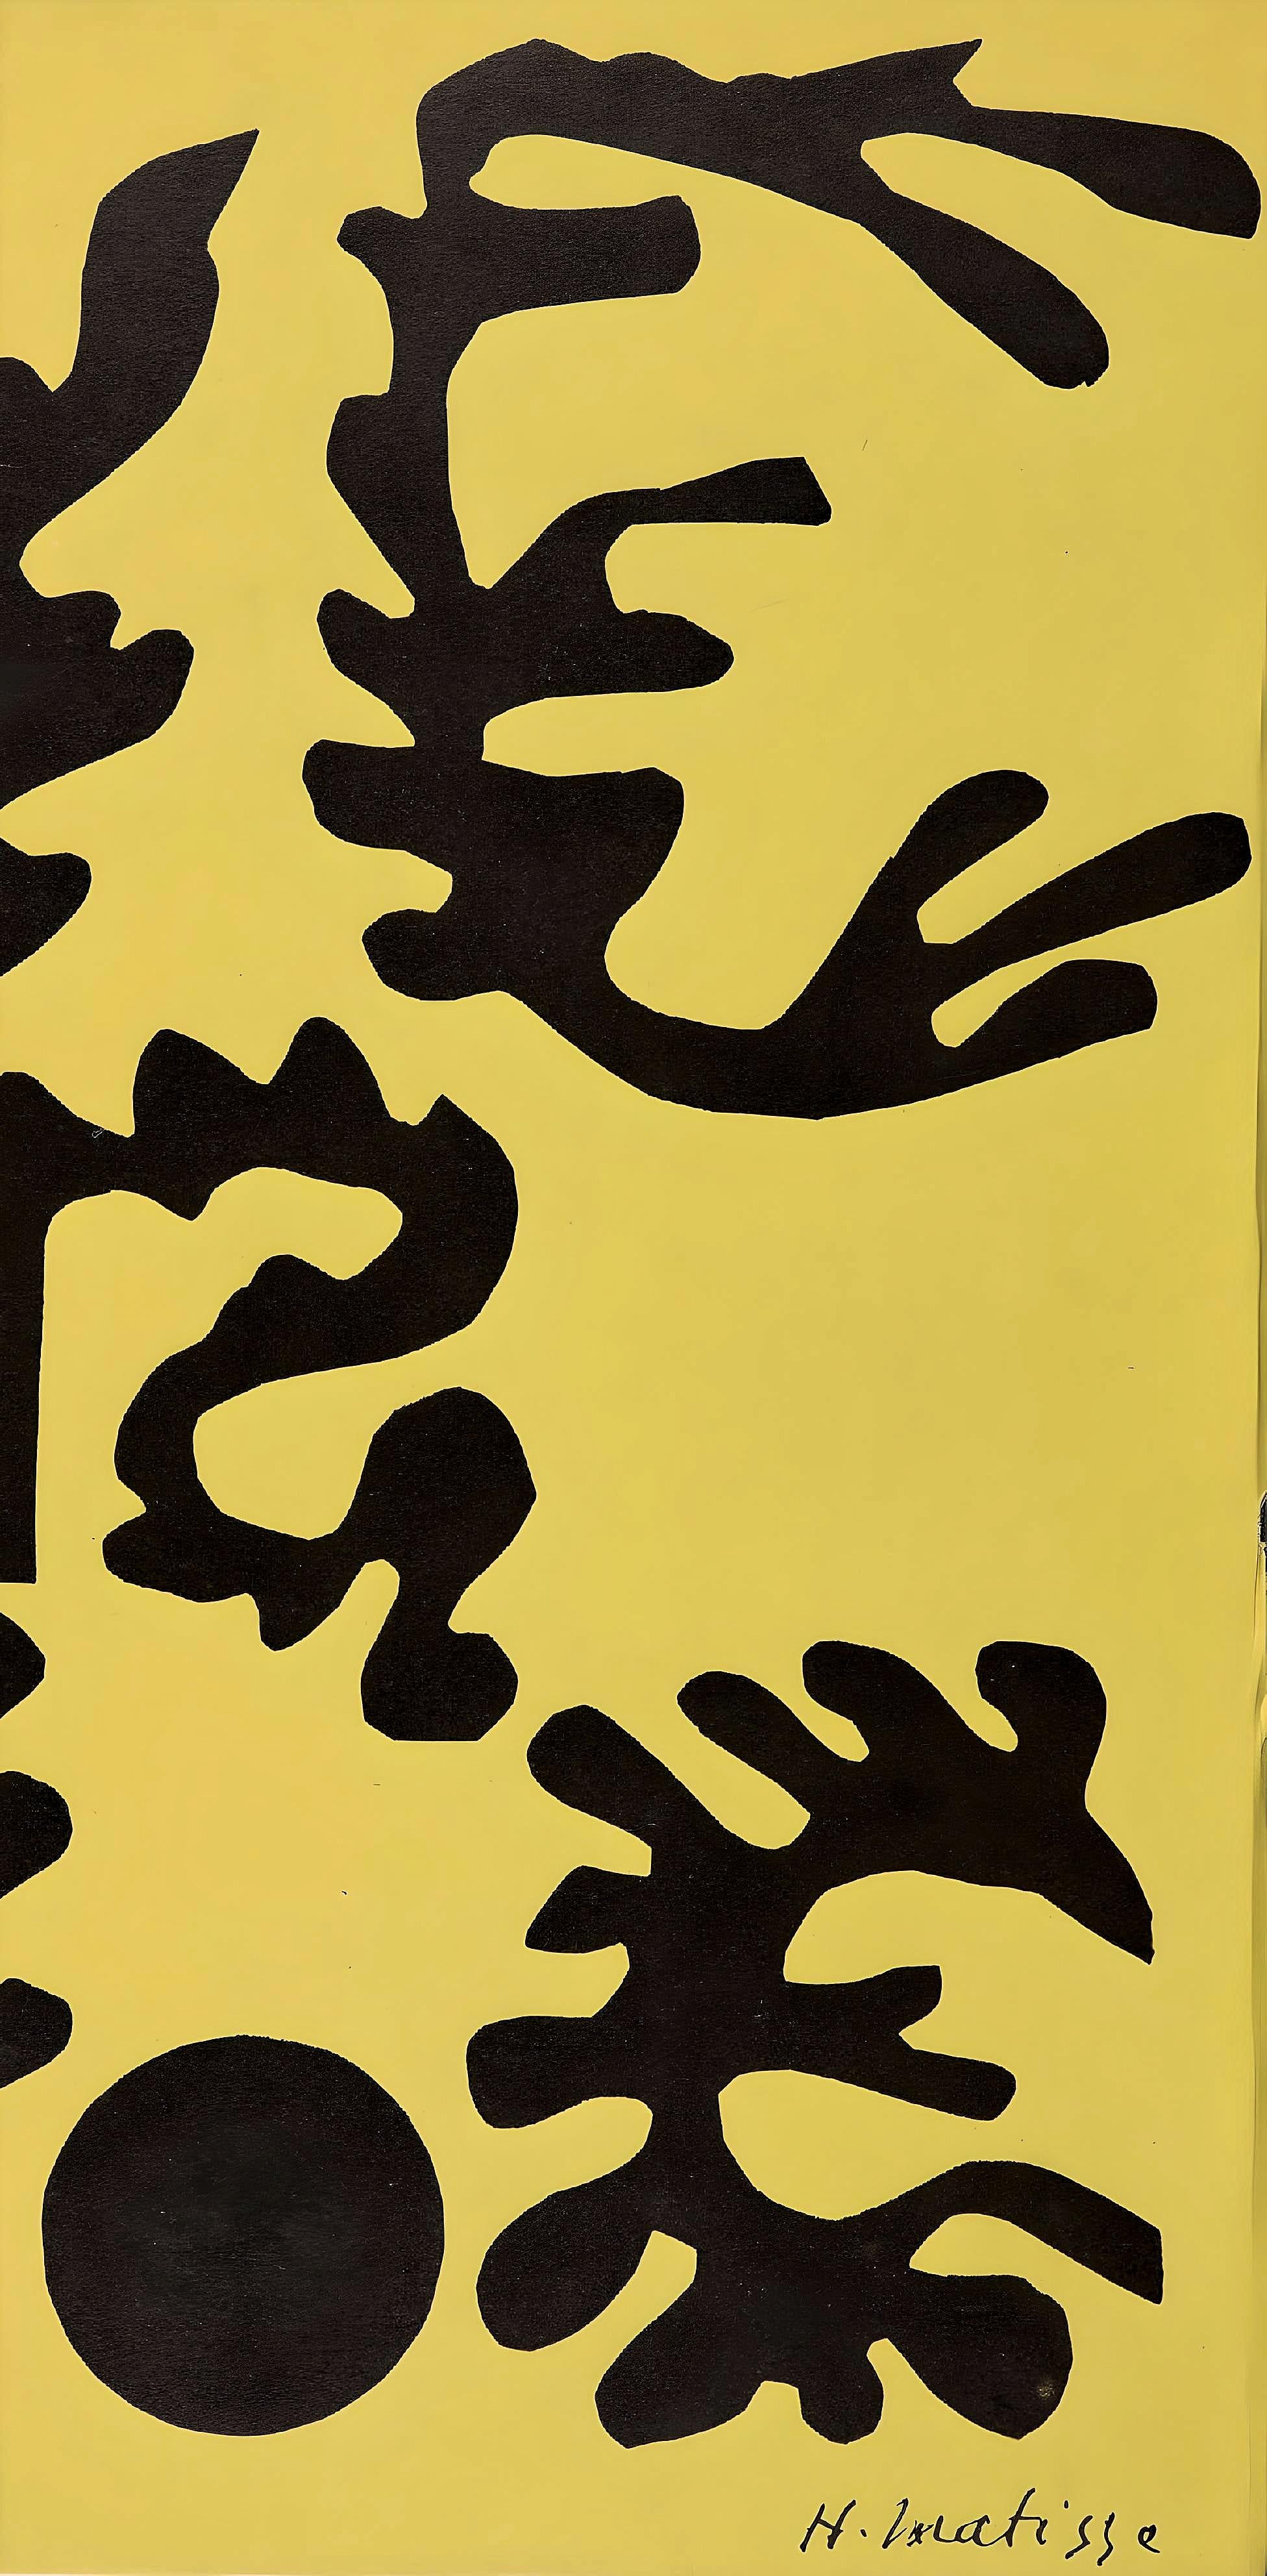 Matisse, Couverture, Verve: Revue Artistique et Littéraire (after) - Modern Print by Henri Matisse